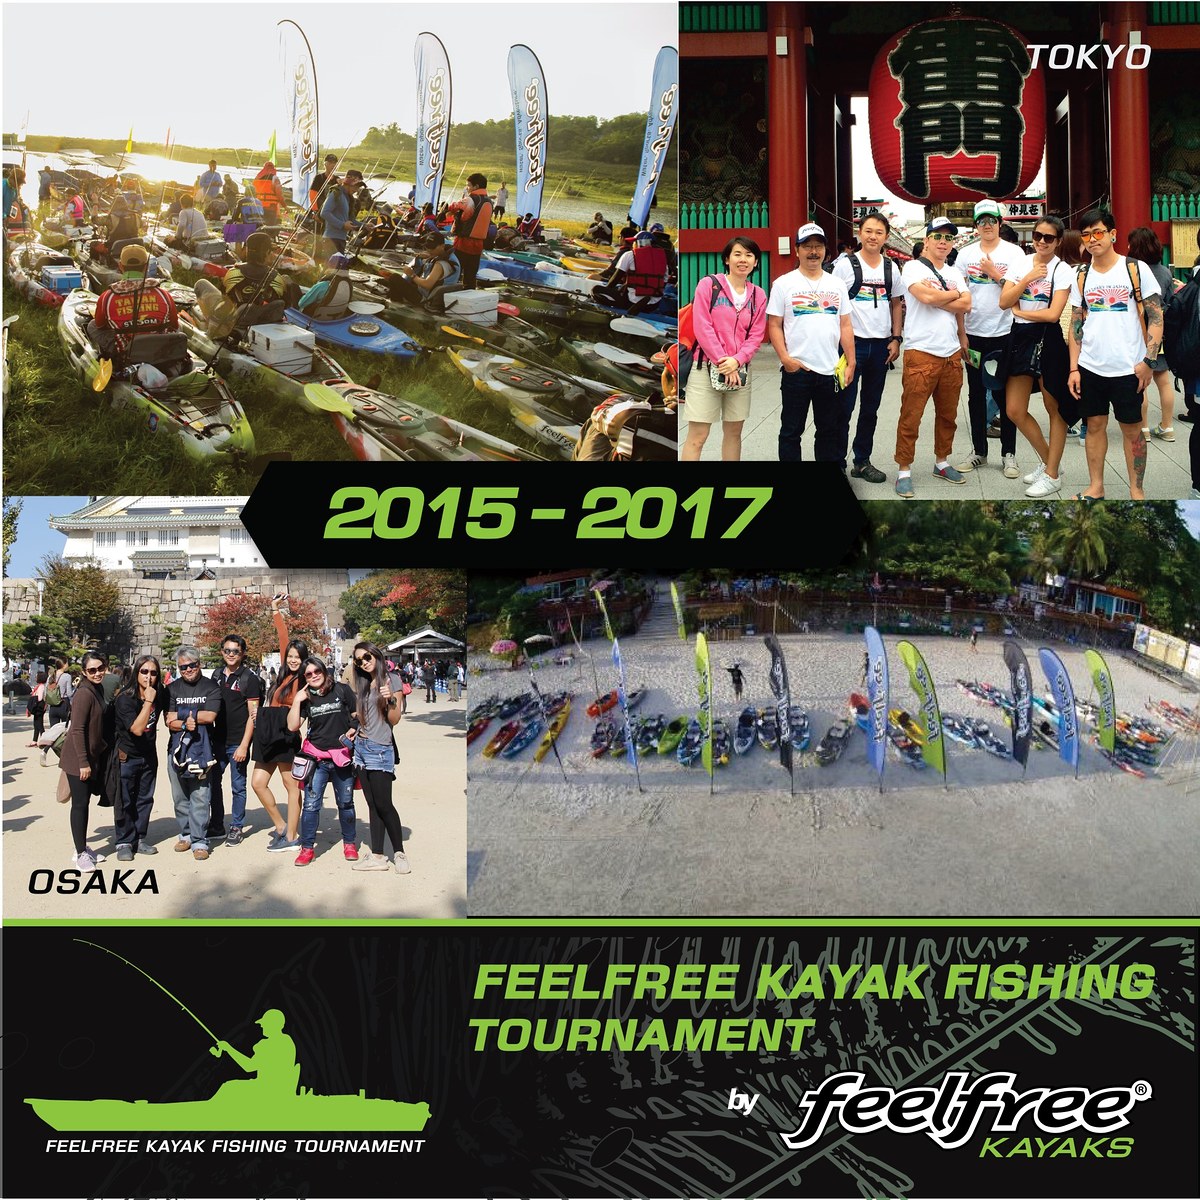 การแข่งขันตกปลาด้วยเรือคยัค Feelfree Fishing Tournament 2018